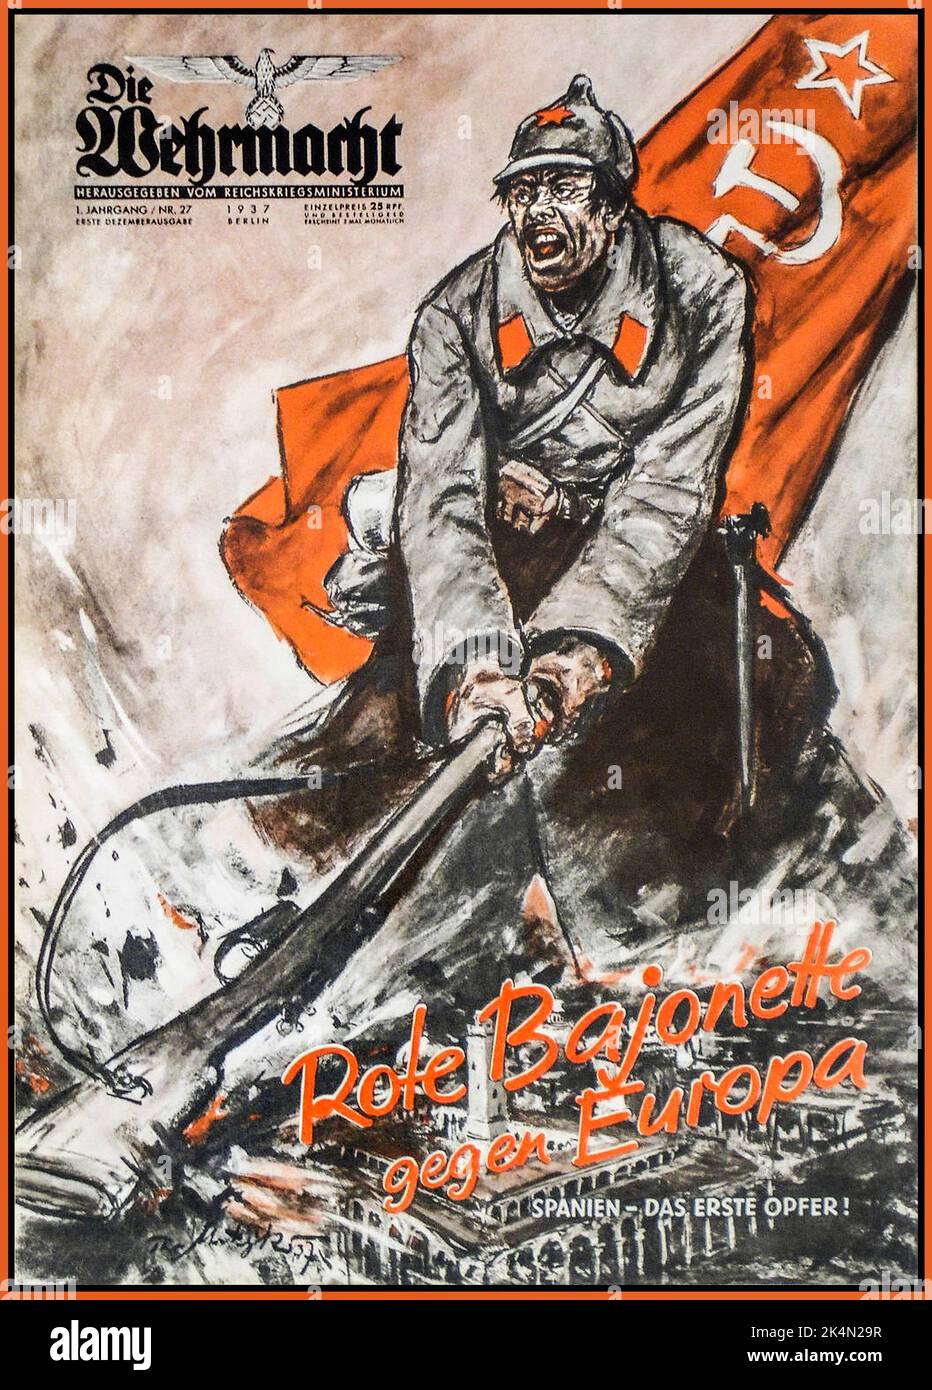 Le magazine de propagande de l'Allemagne nazie DIE WEHRMACHT 1937 les bayonets rouges de Wehrmacht contre l'Europe. Espagne la première victime mettant en vedette un soldat russe de l'Union soviétique avec un drapeau de marteau et de faucille derrière, écrasant son fusil sur un bâtiment espagnol Allemagne nazie 1930s Banque D'Images